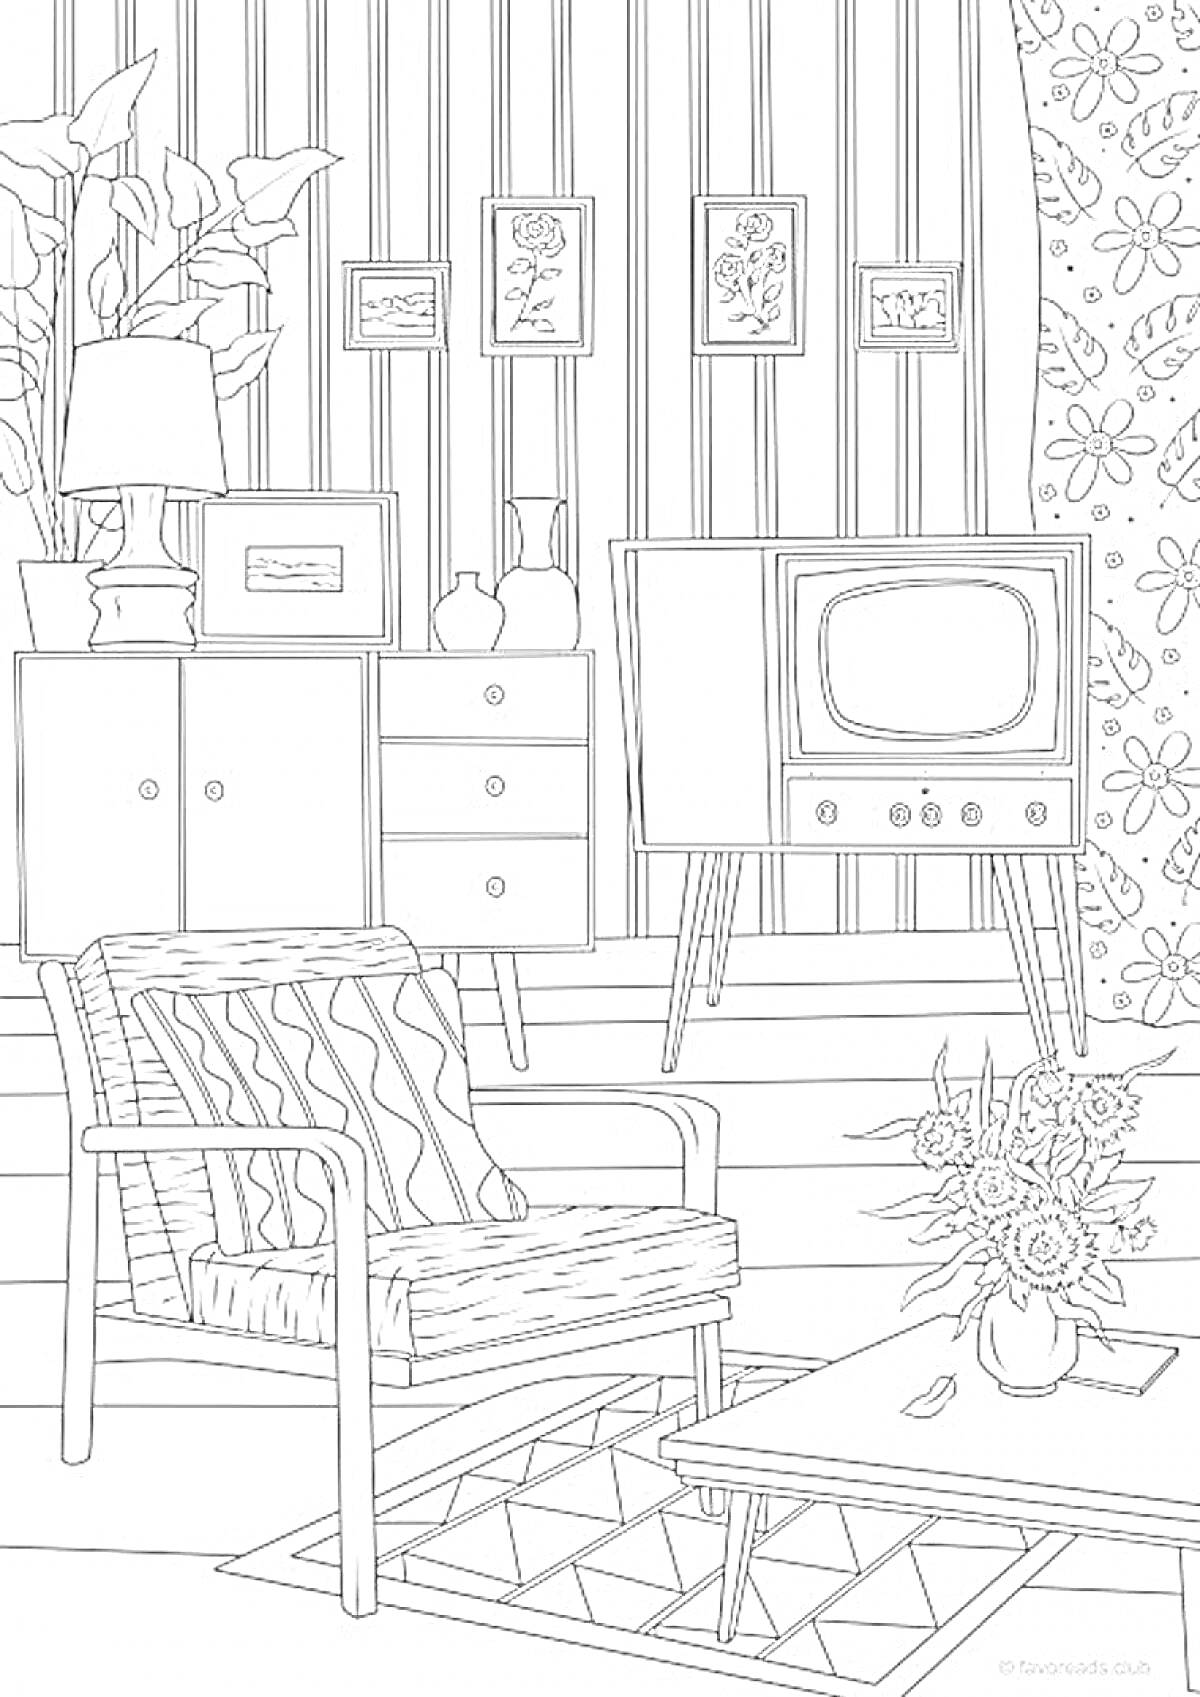 На раскраске изображено: Гостиная, Телевизор, Кресло, Журнальный столик, Цветы, Ковер, Шкаф, Лампа, Подушка, Растения, Интерьер, Ваза